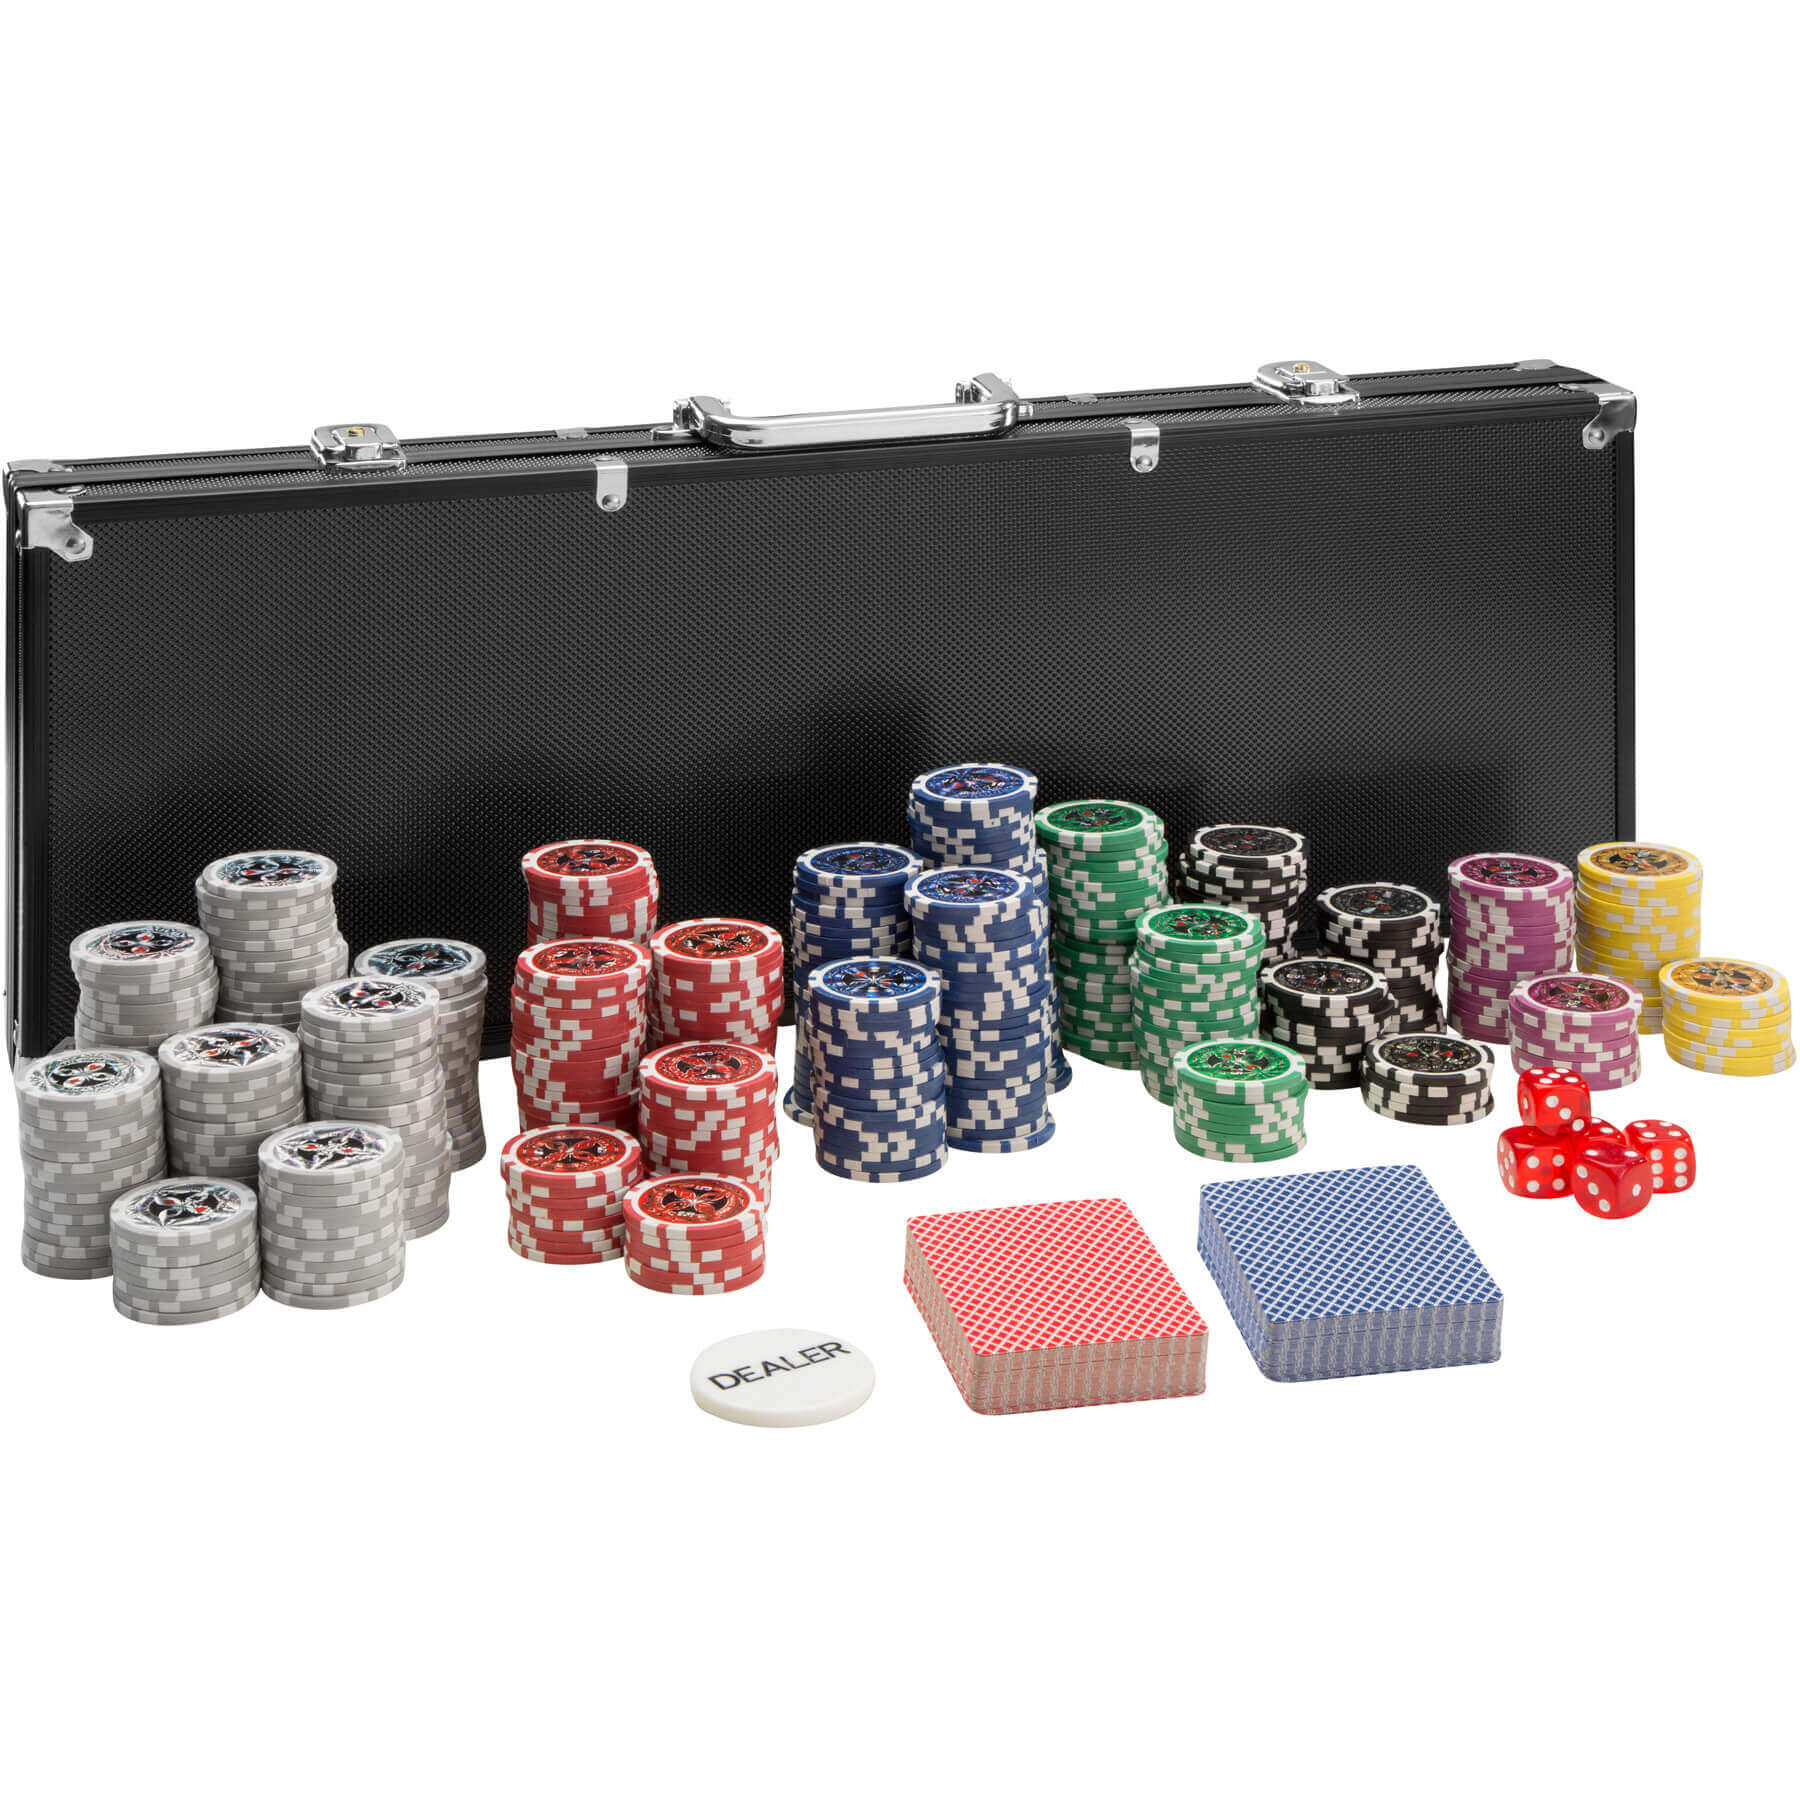 tectake Pokerová sada vč. hliníkového kufru - černá,500 dílů